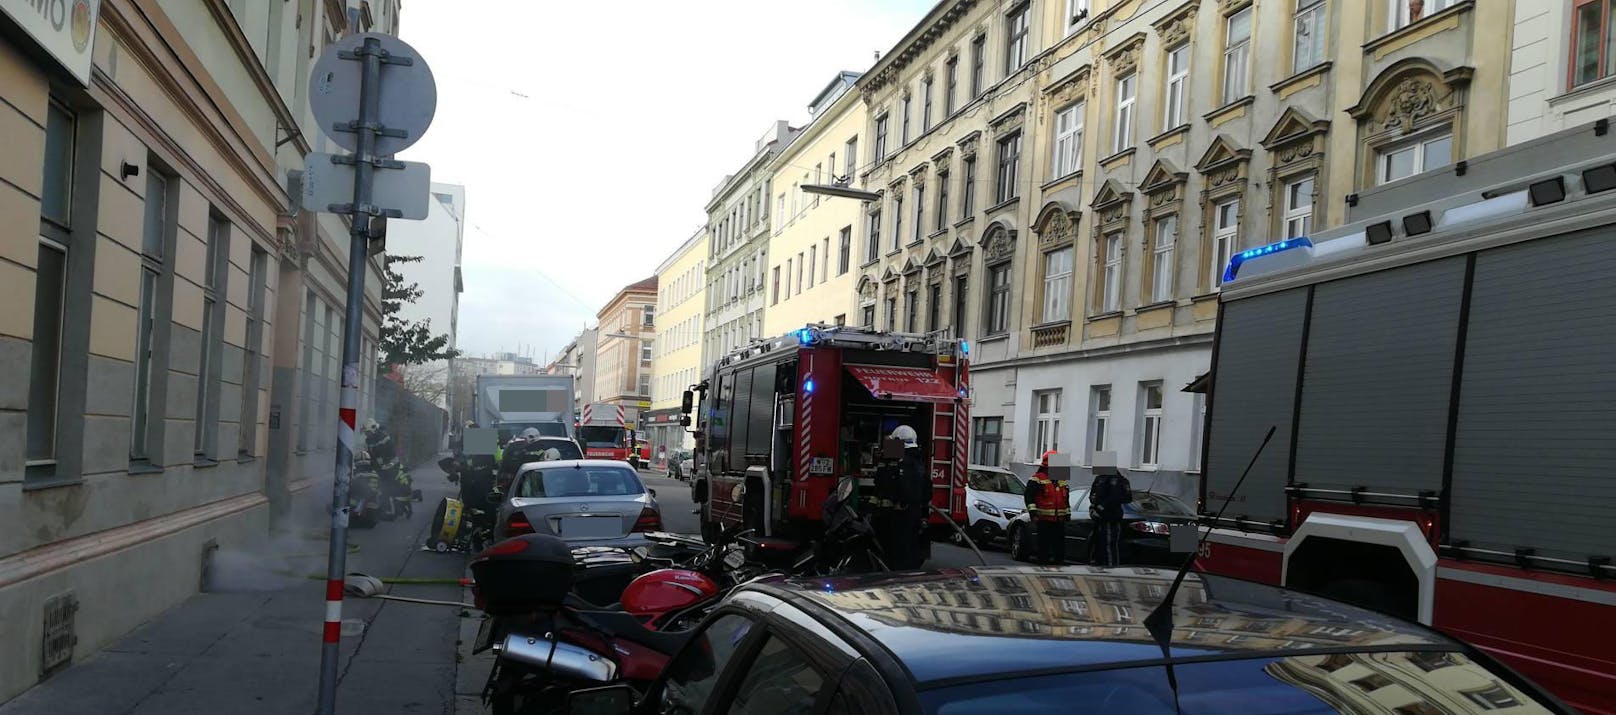 Als die Einsatzkräfte eintrafen rauchte es bereits aus den Kellerfenstern des Hauses. Mit insgesamt sechs Einsatzfahrzeugen und 27 Mann rückte die Wiener Berufsfeuerwehr in die Dreyhausenstraße aus.